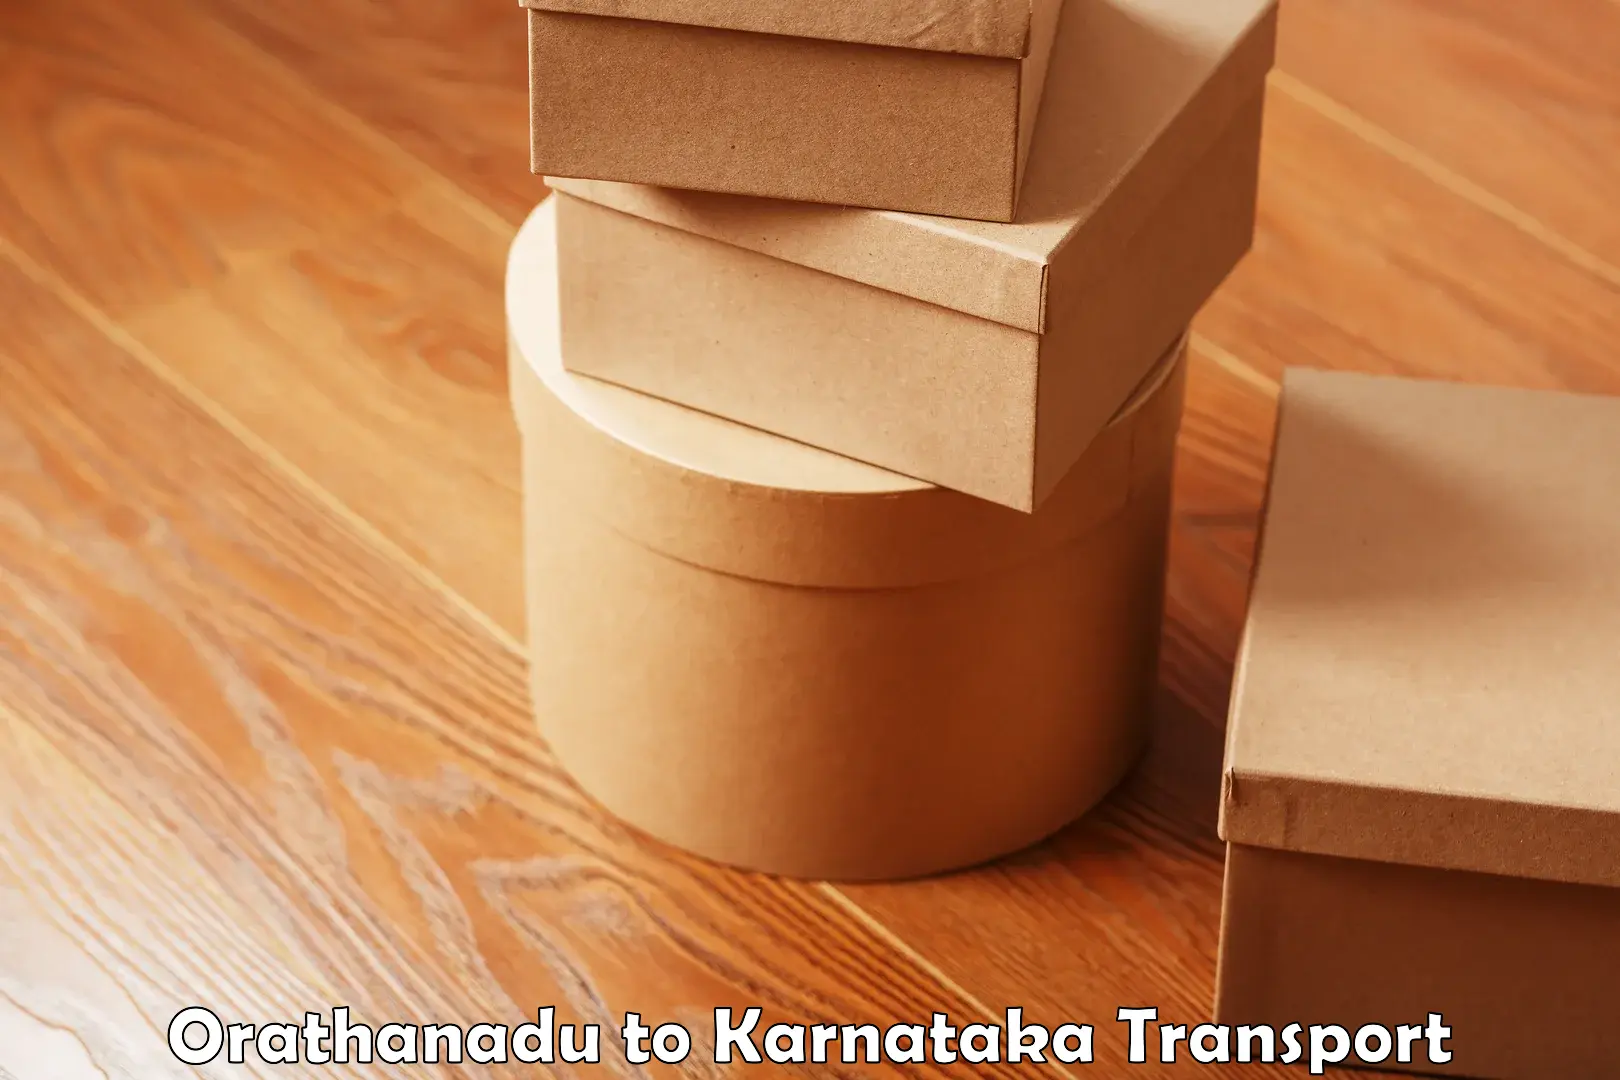 Intercity transport in Orathanadu to Karnataka